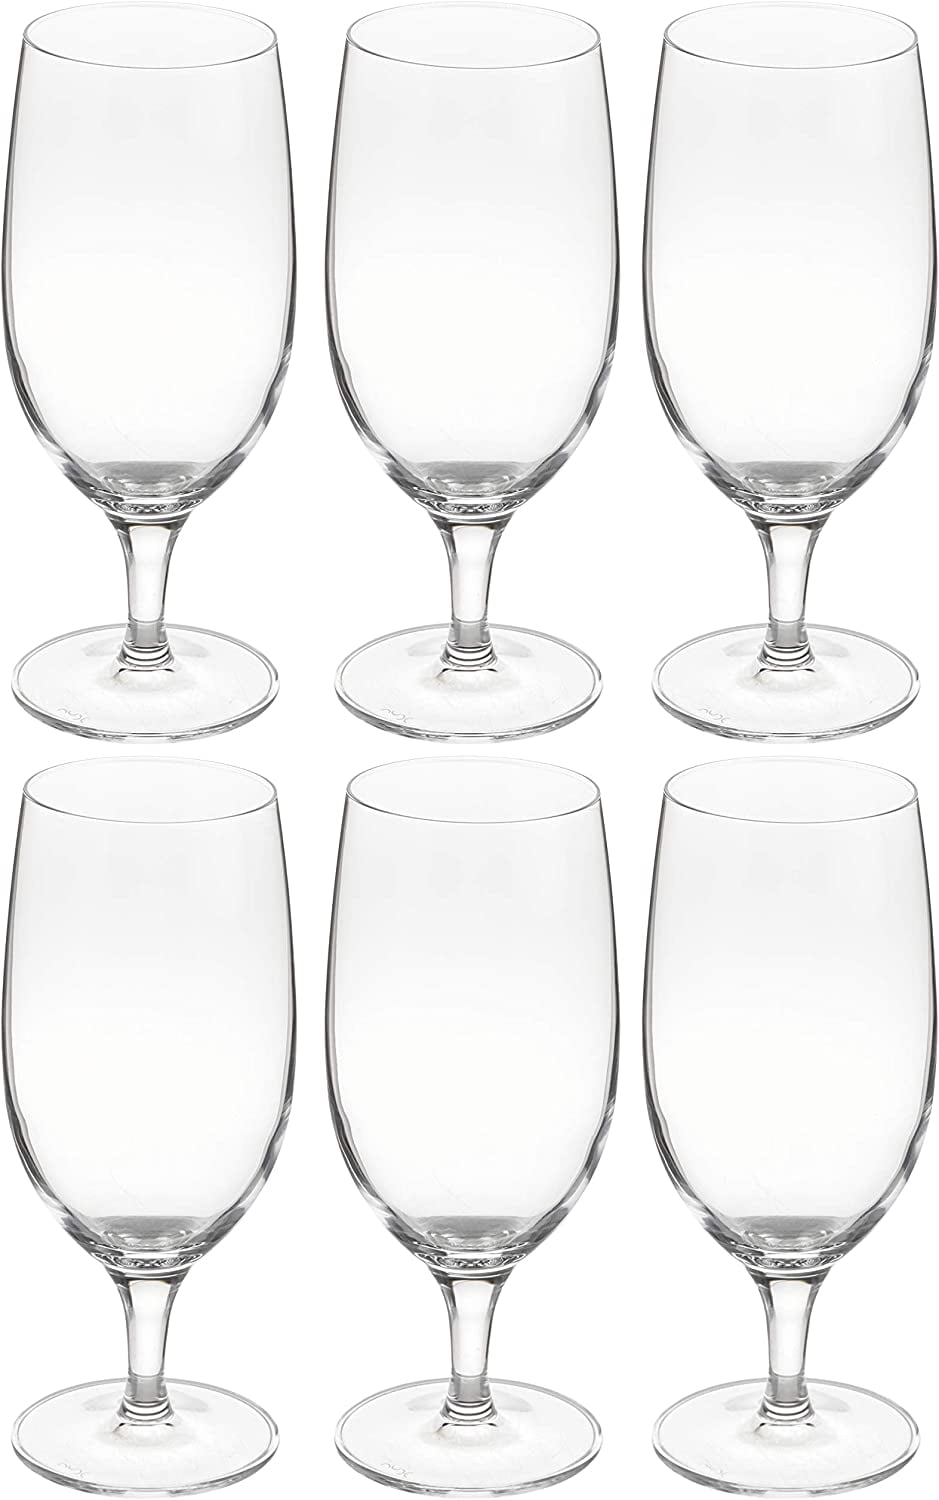 Voglia Nude 20 oz Cabernet Wine Glass - Crystal, All-Purpose - 3 1/2 x 3 1/ 2 x 9 - 6 count box